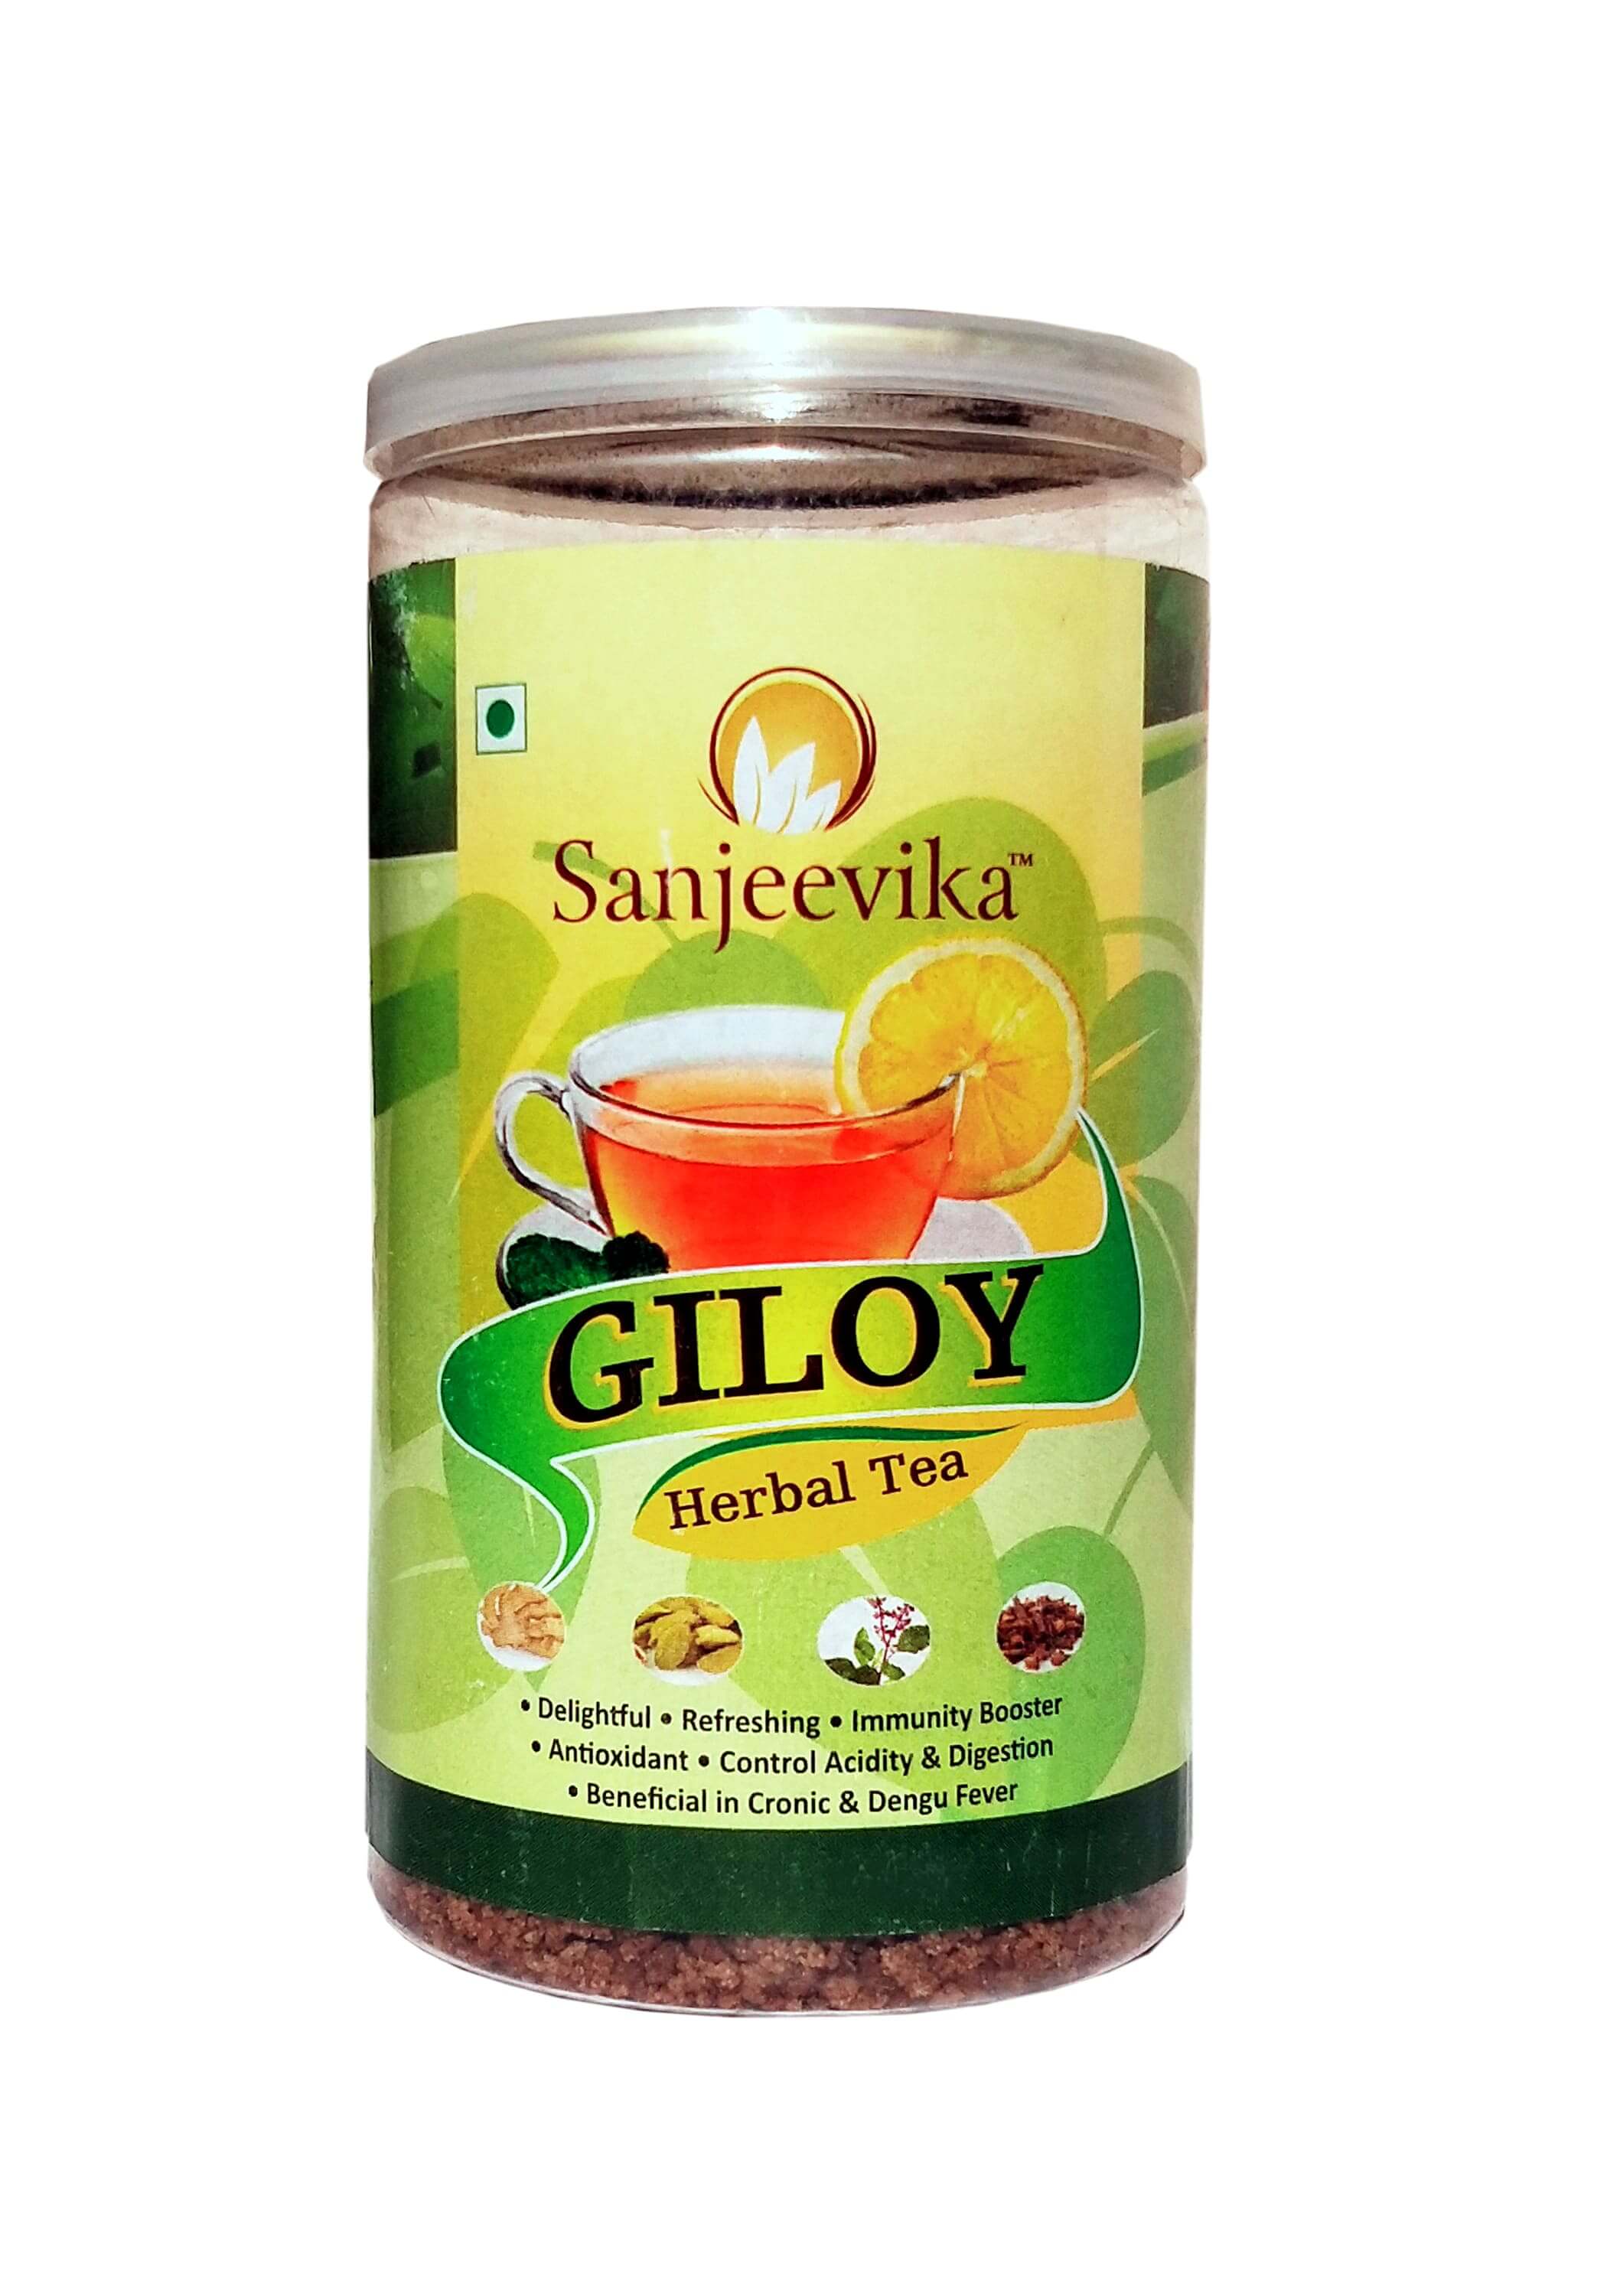 Giloy Herbal Tea